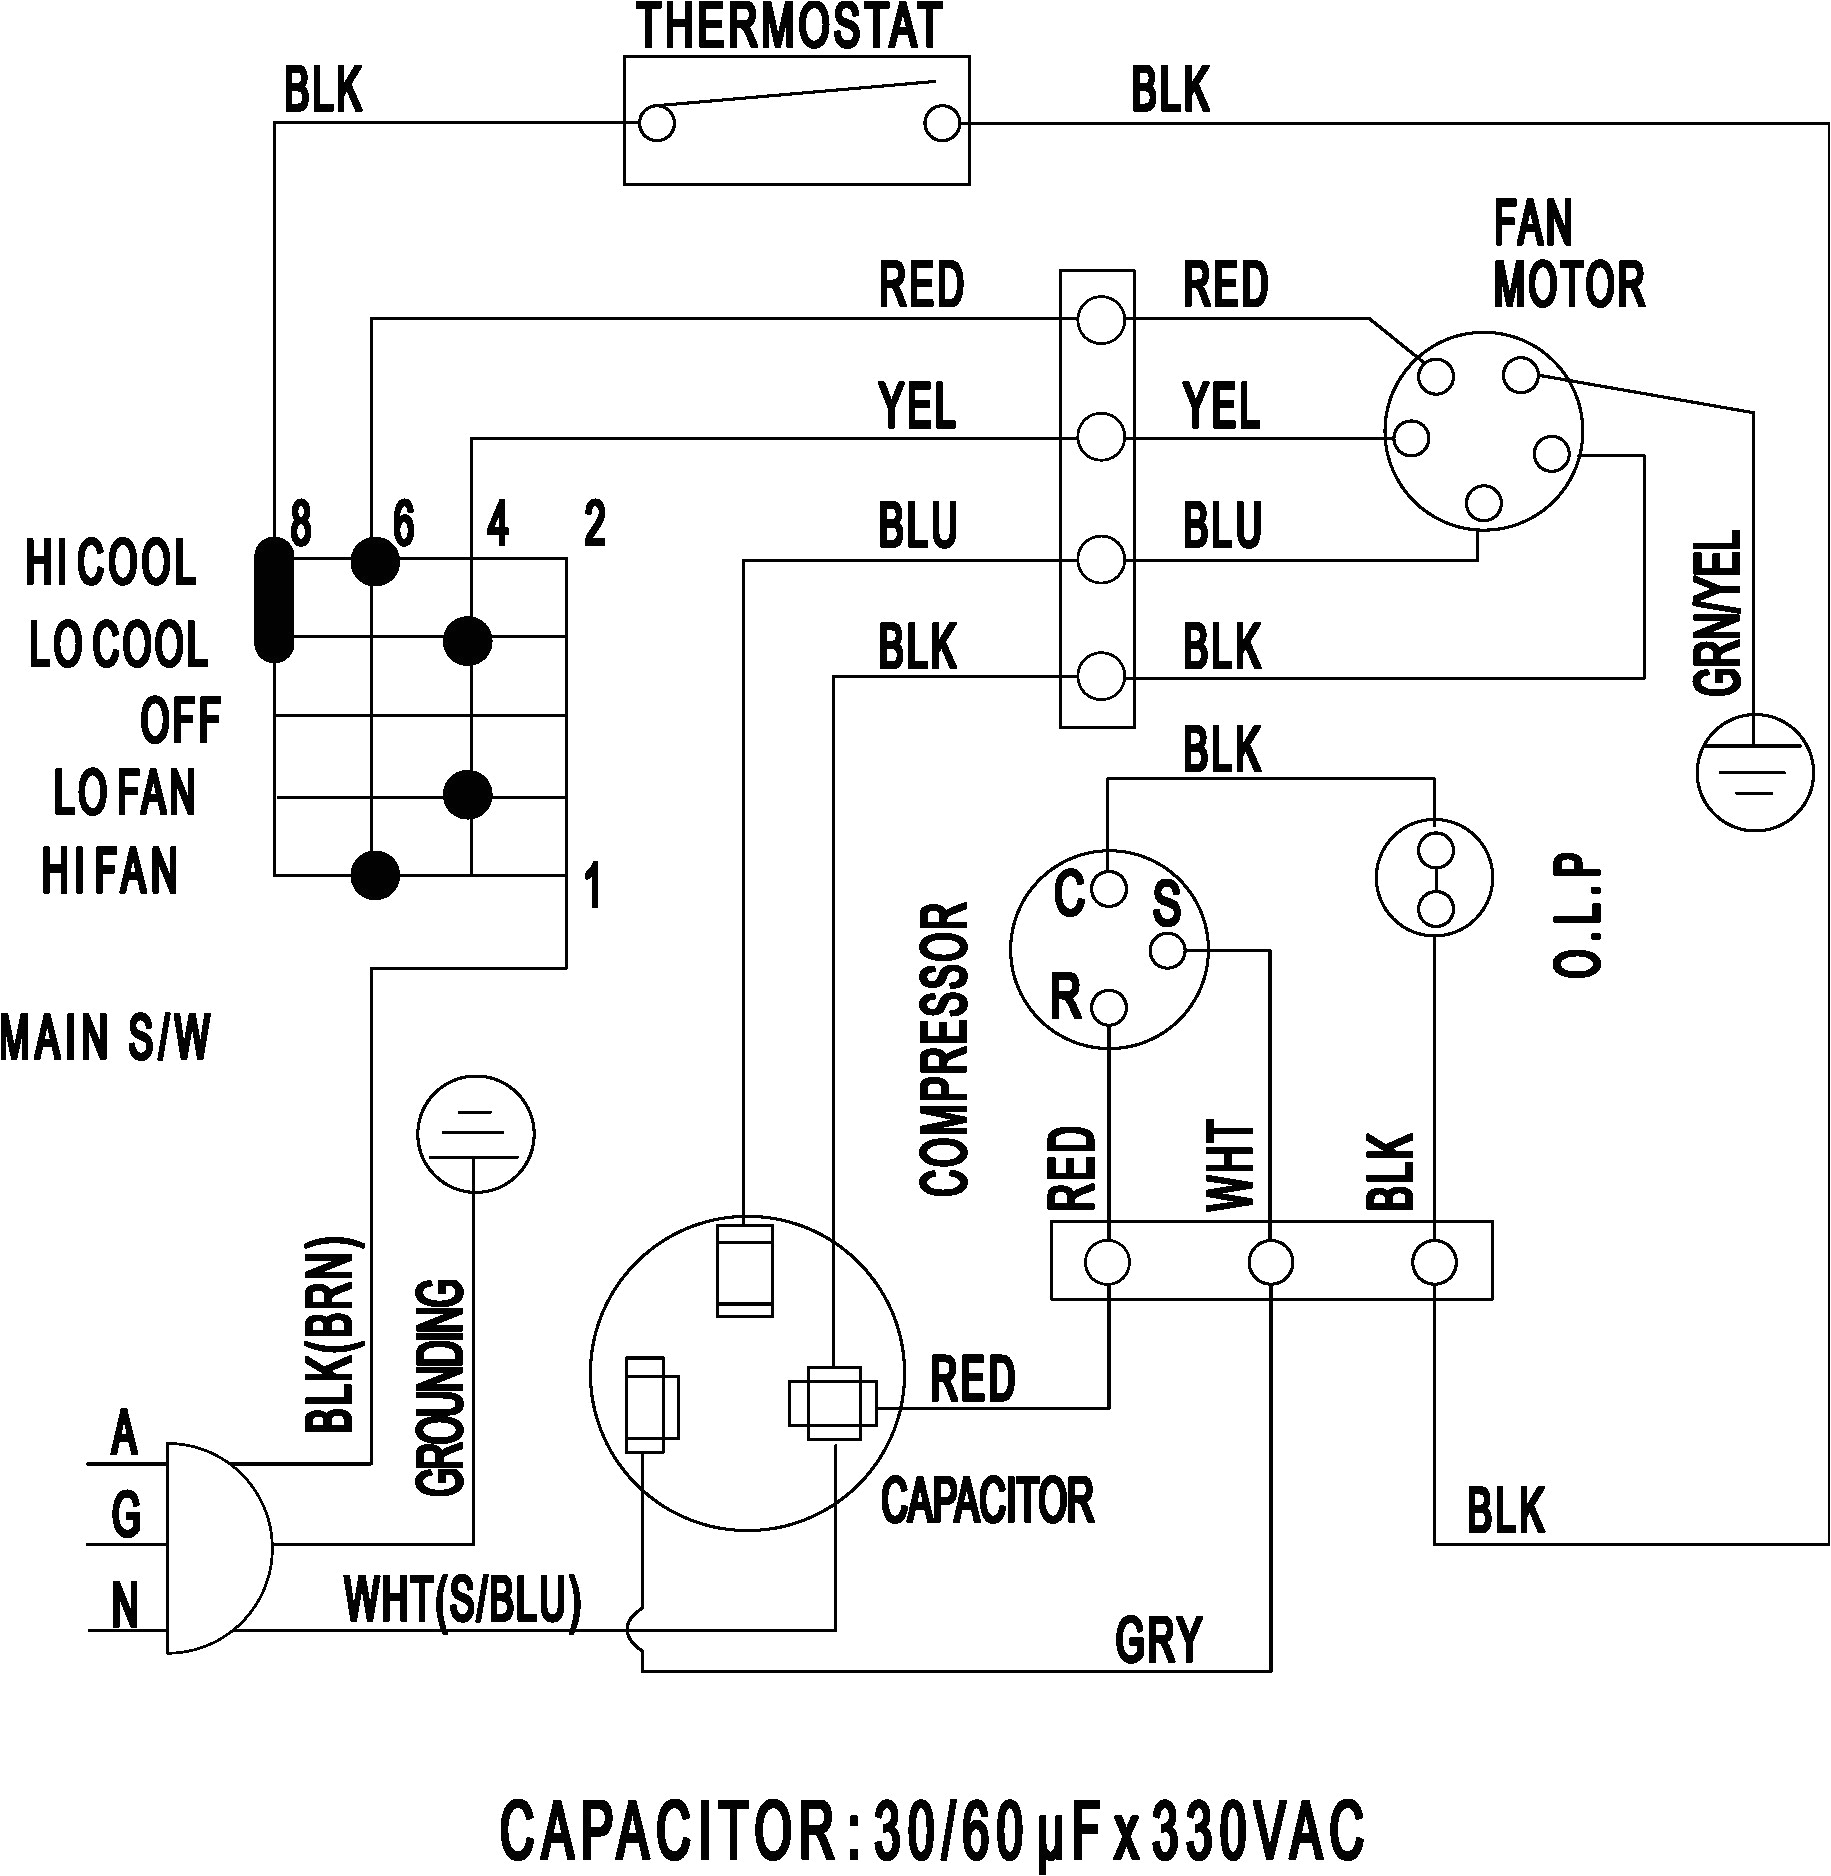 split system wiring diagram wiring diagram show mitsubishi mini split system wiring diagram ac unit wiring